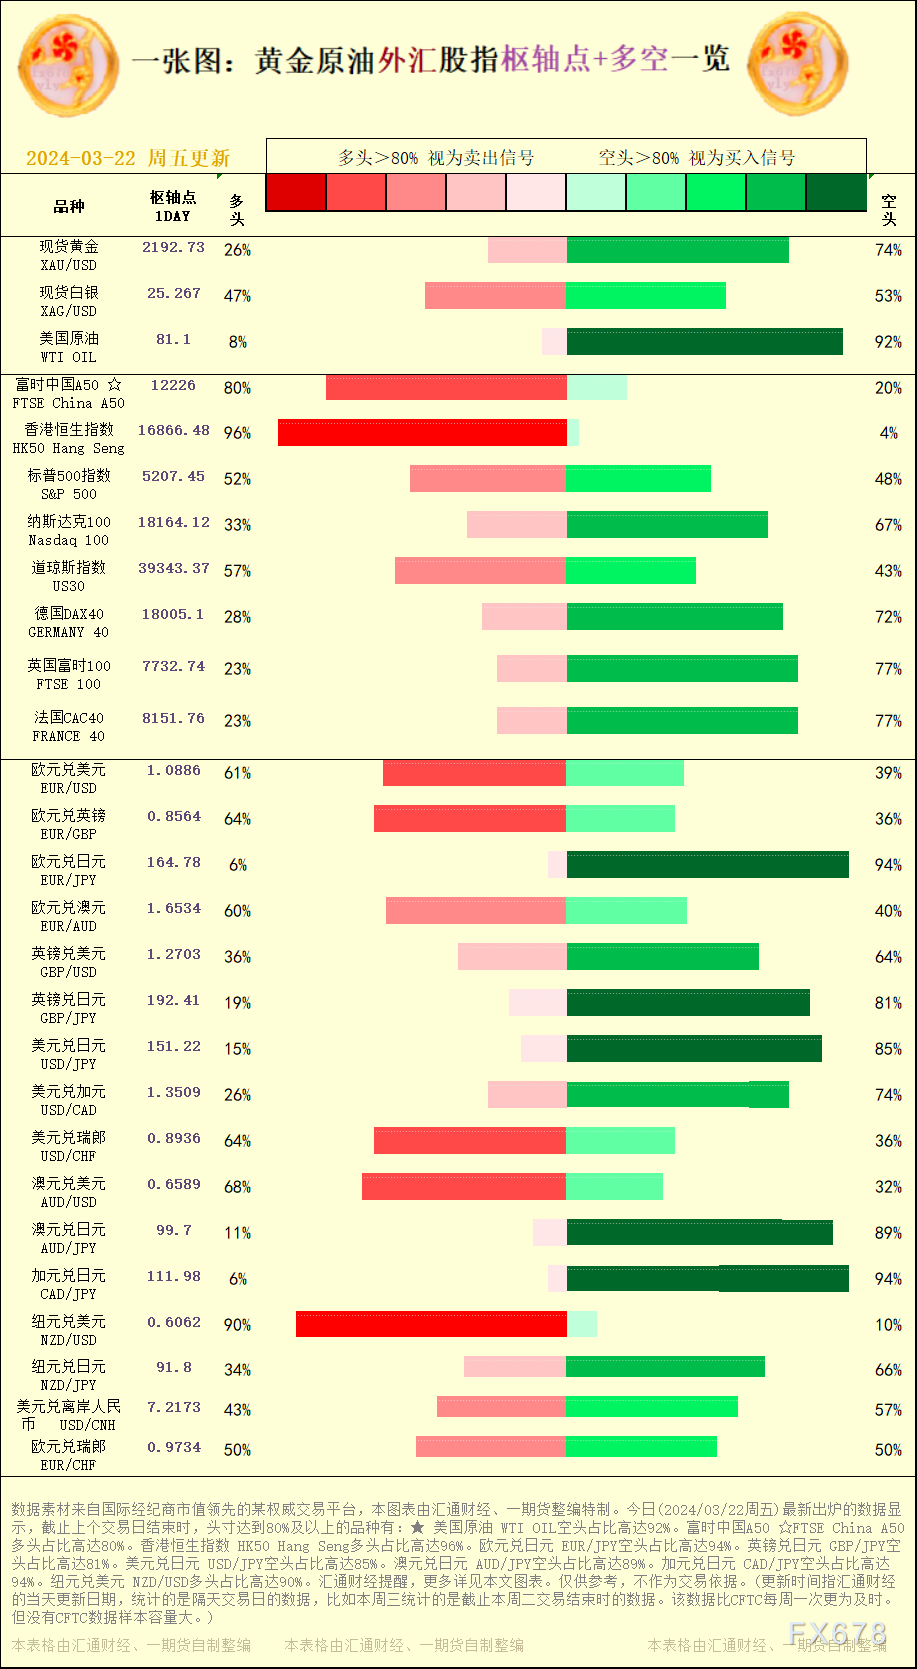 澳元兑日元 AUD/JPY空头占比高达89%